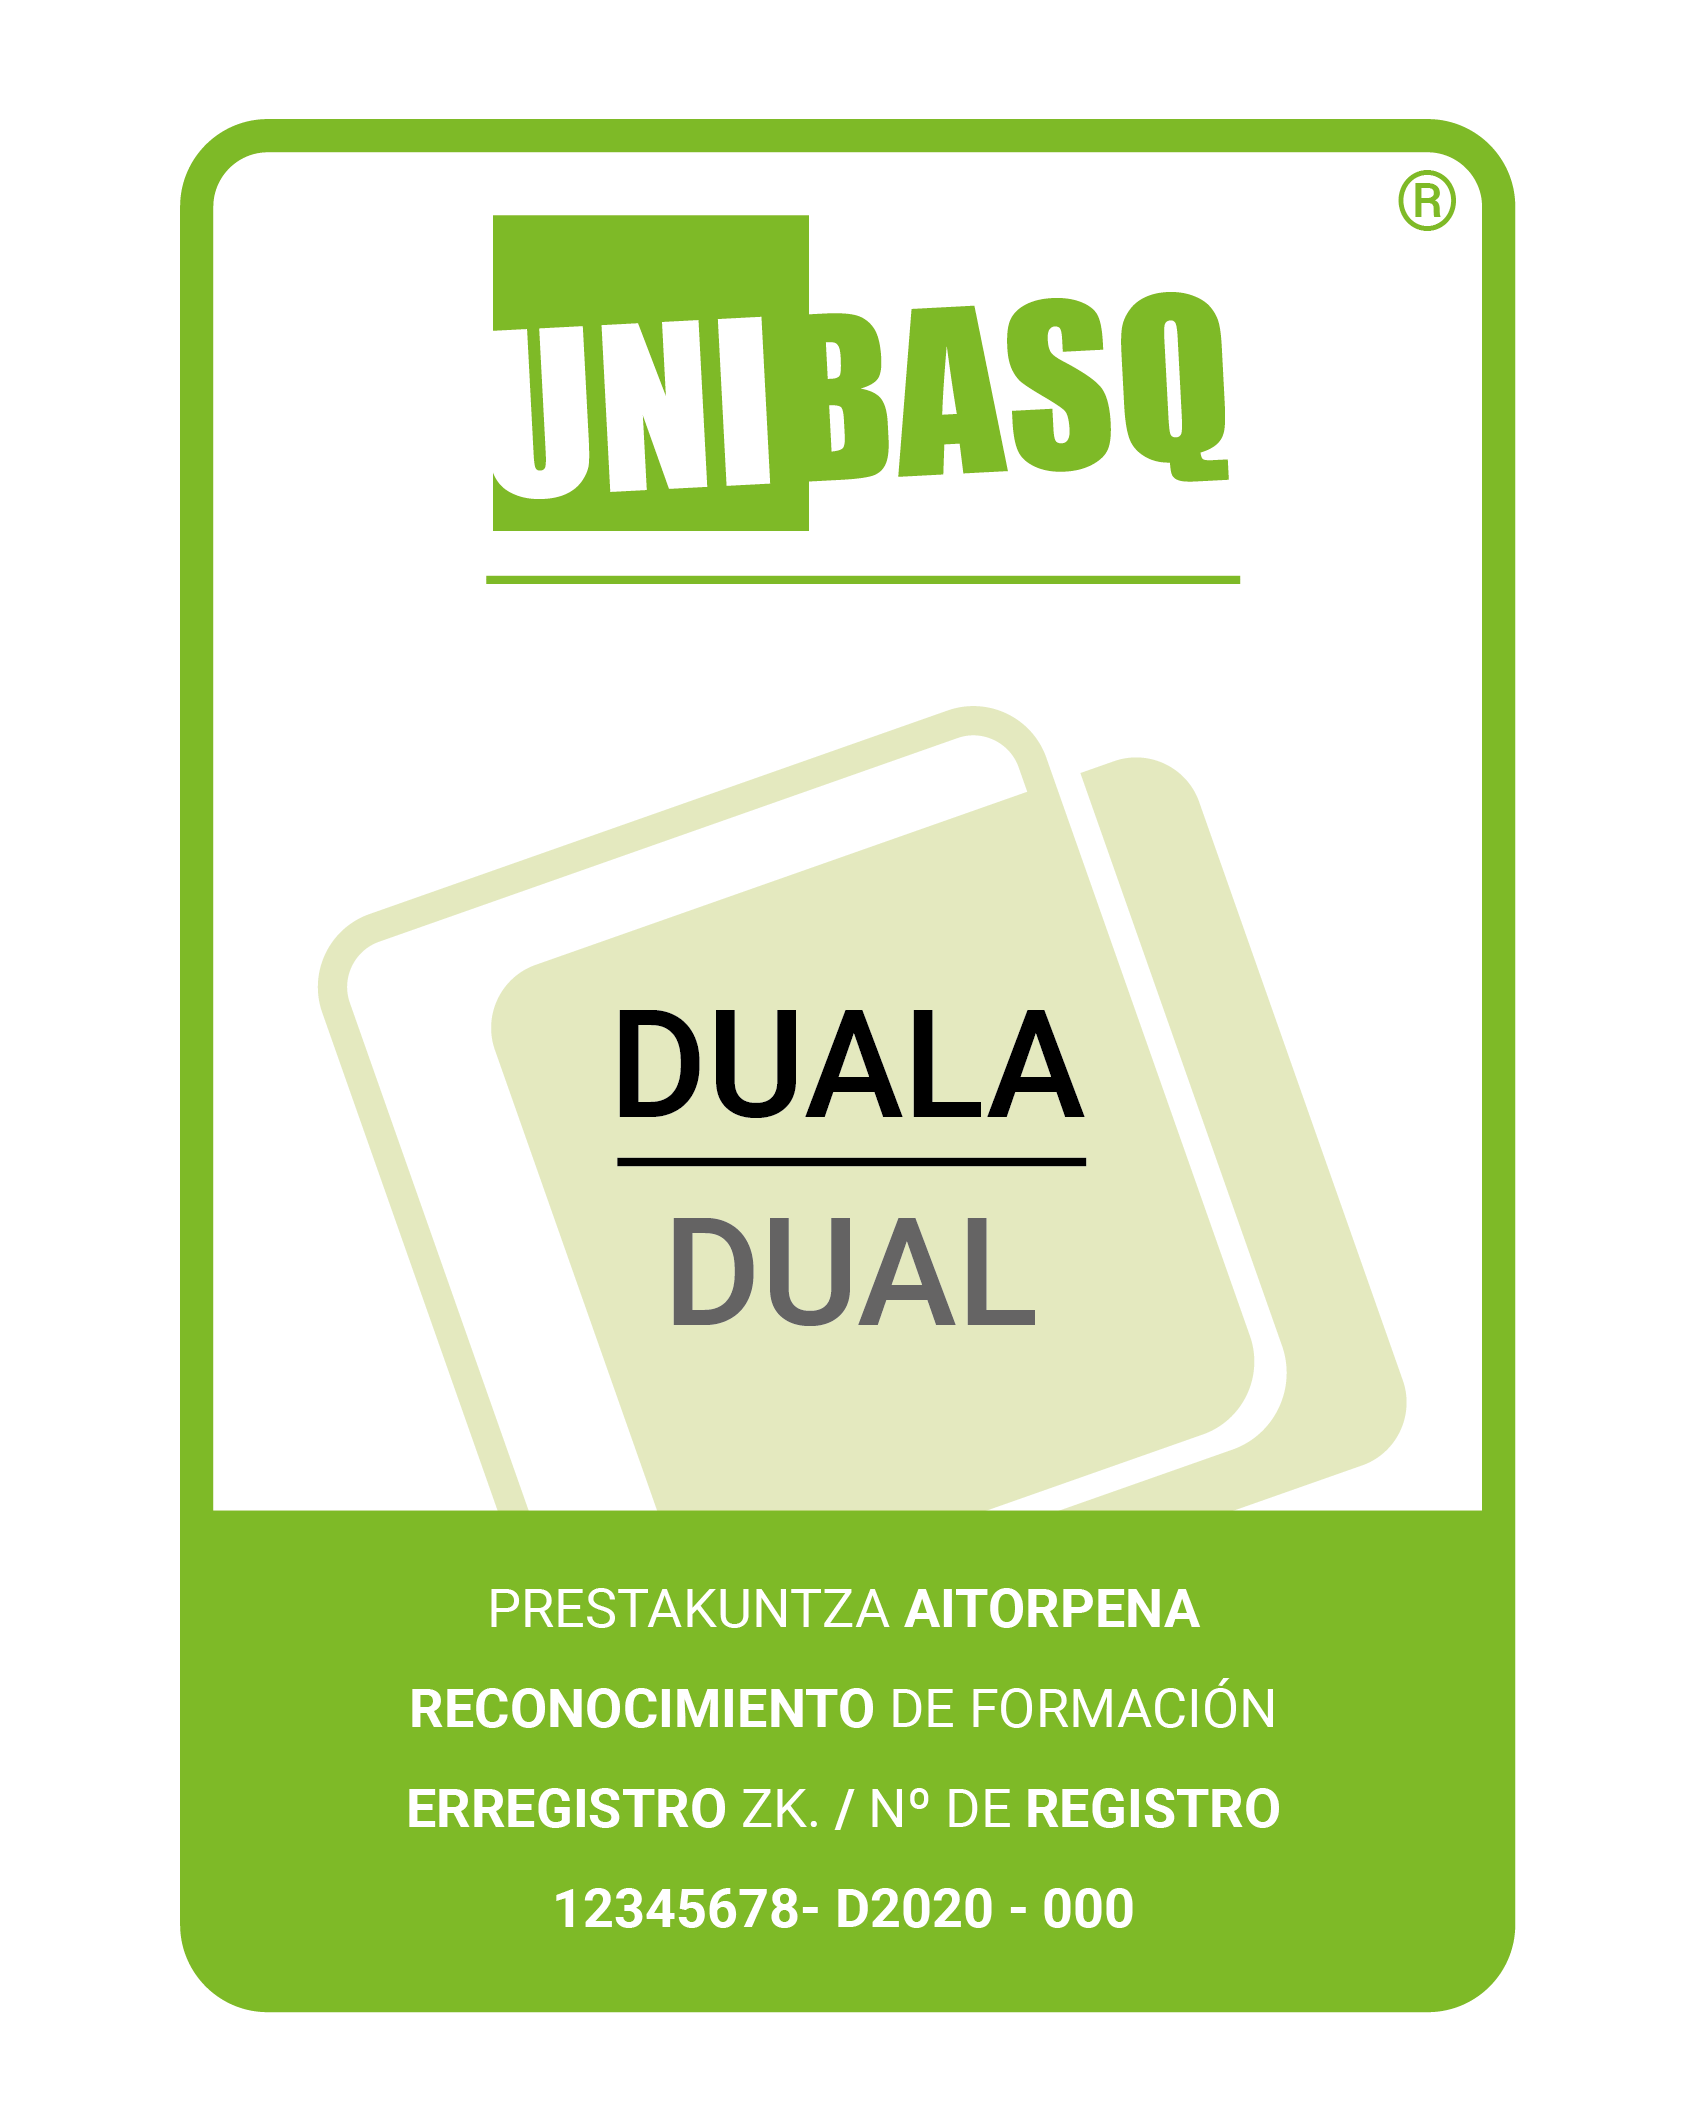 Icono del sello de calidad de Unibasq de la formación DUAL